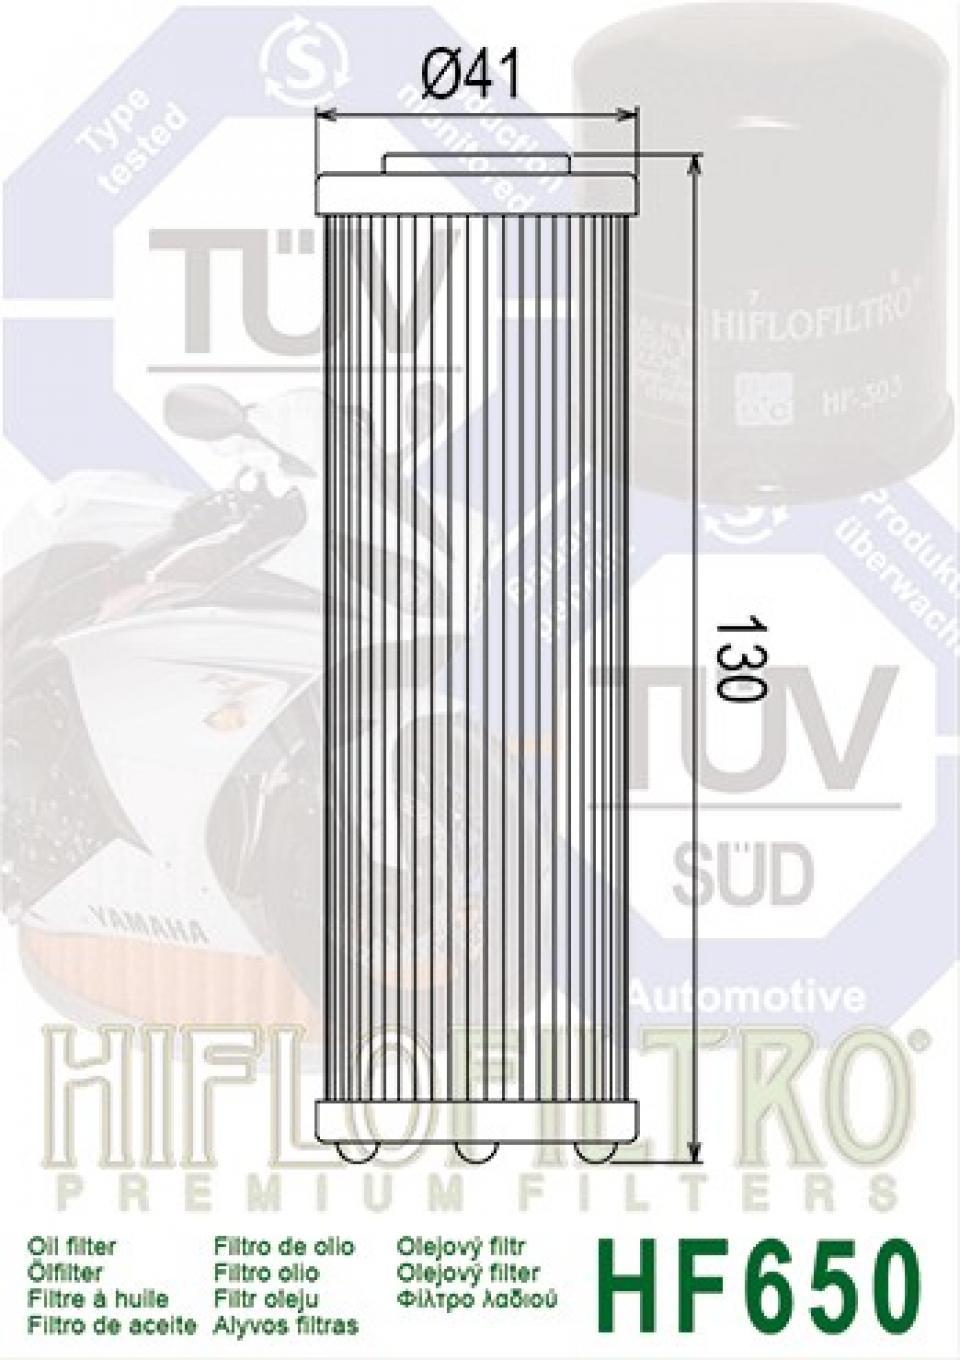 Filtre à huile Hiflofiltro pour Moto KTM 990 Super duke 2005 à 2011 HF650 équivalent HF158 Neuf